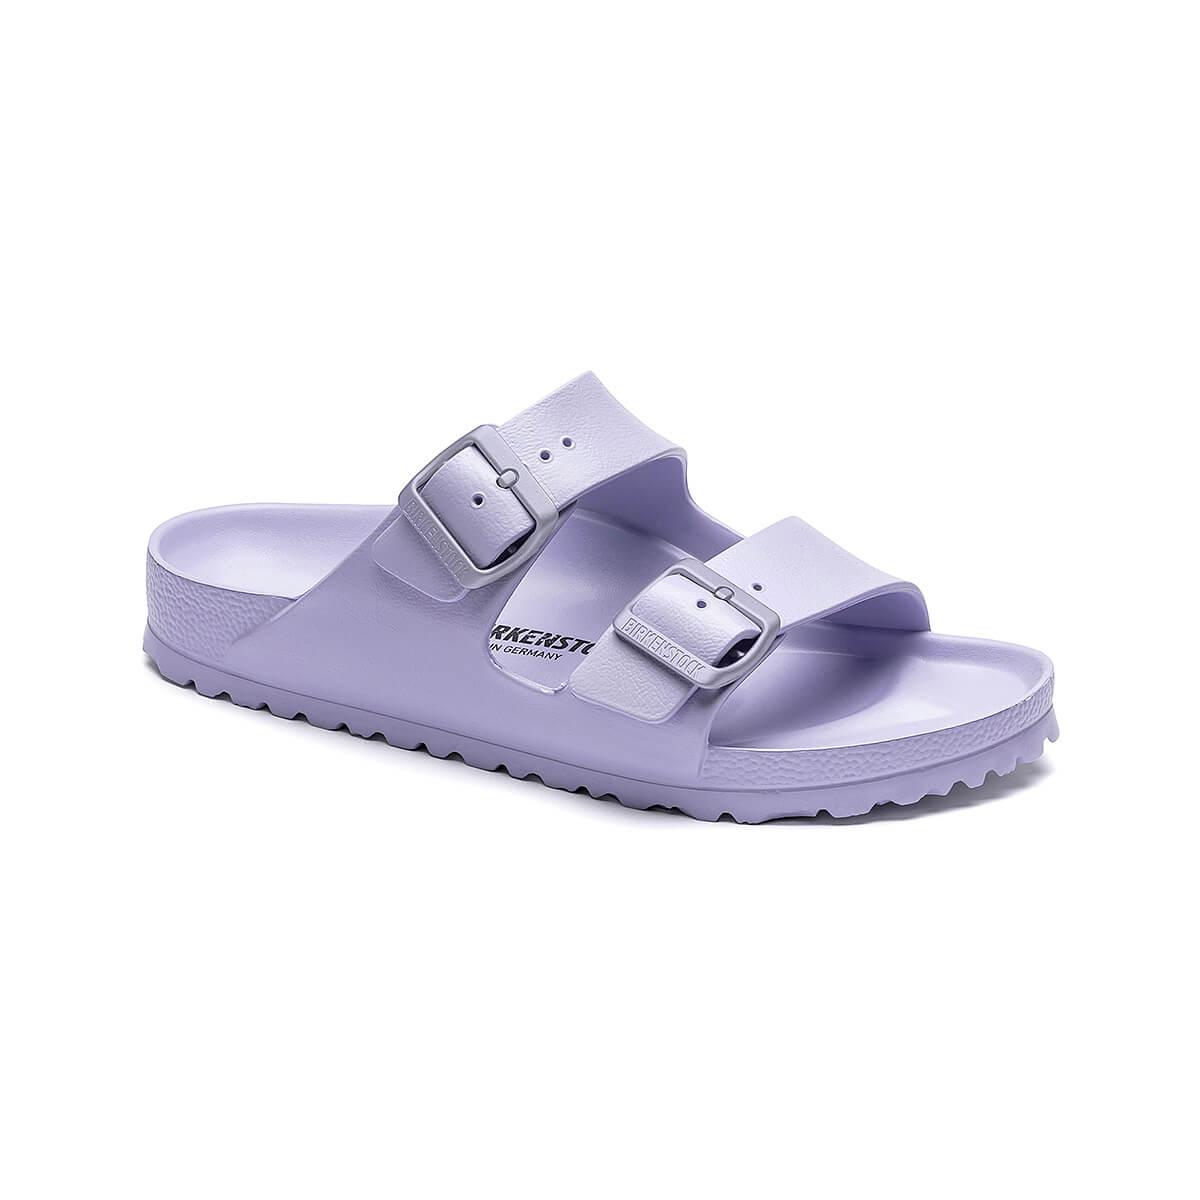  Women's Arizona Essentials Limited Sandals